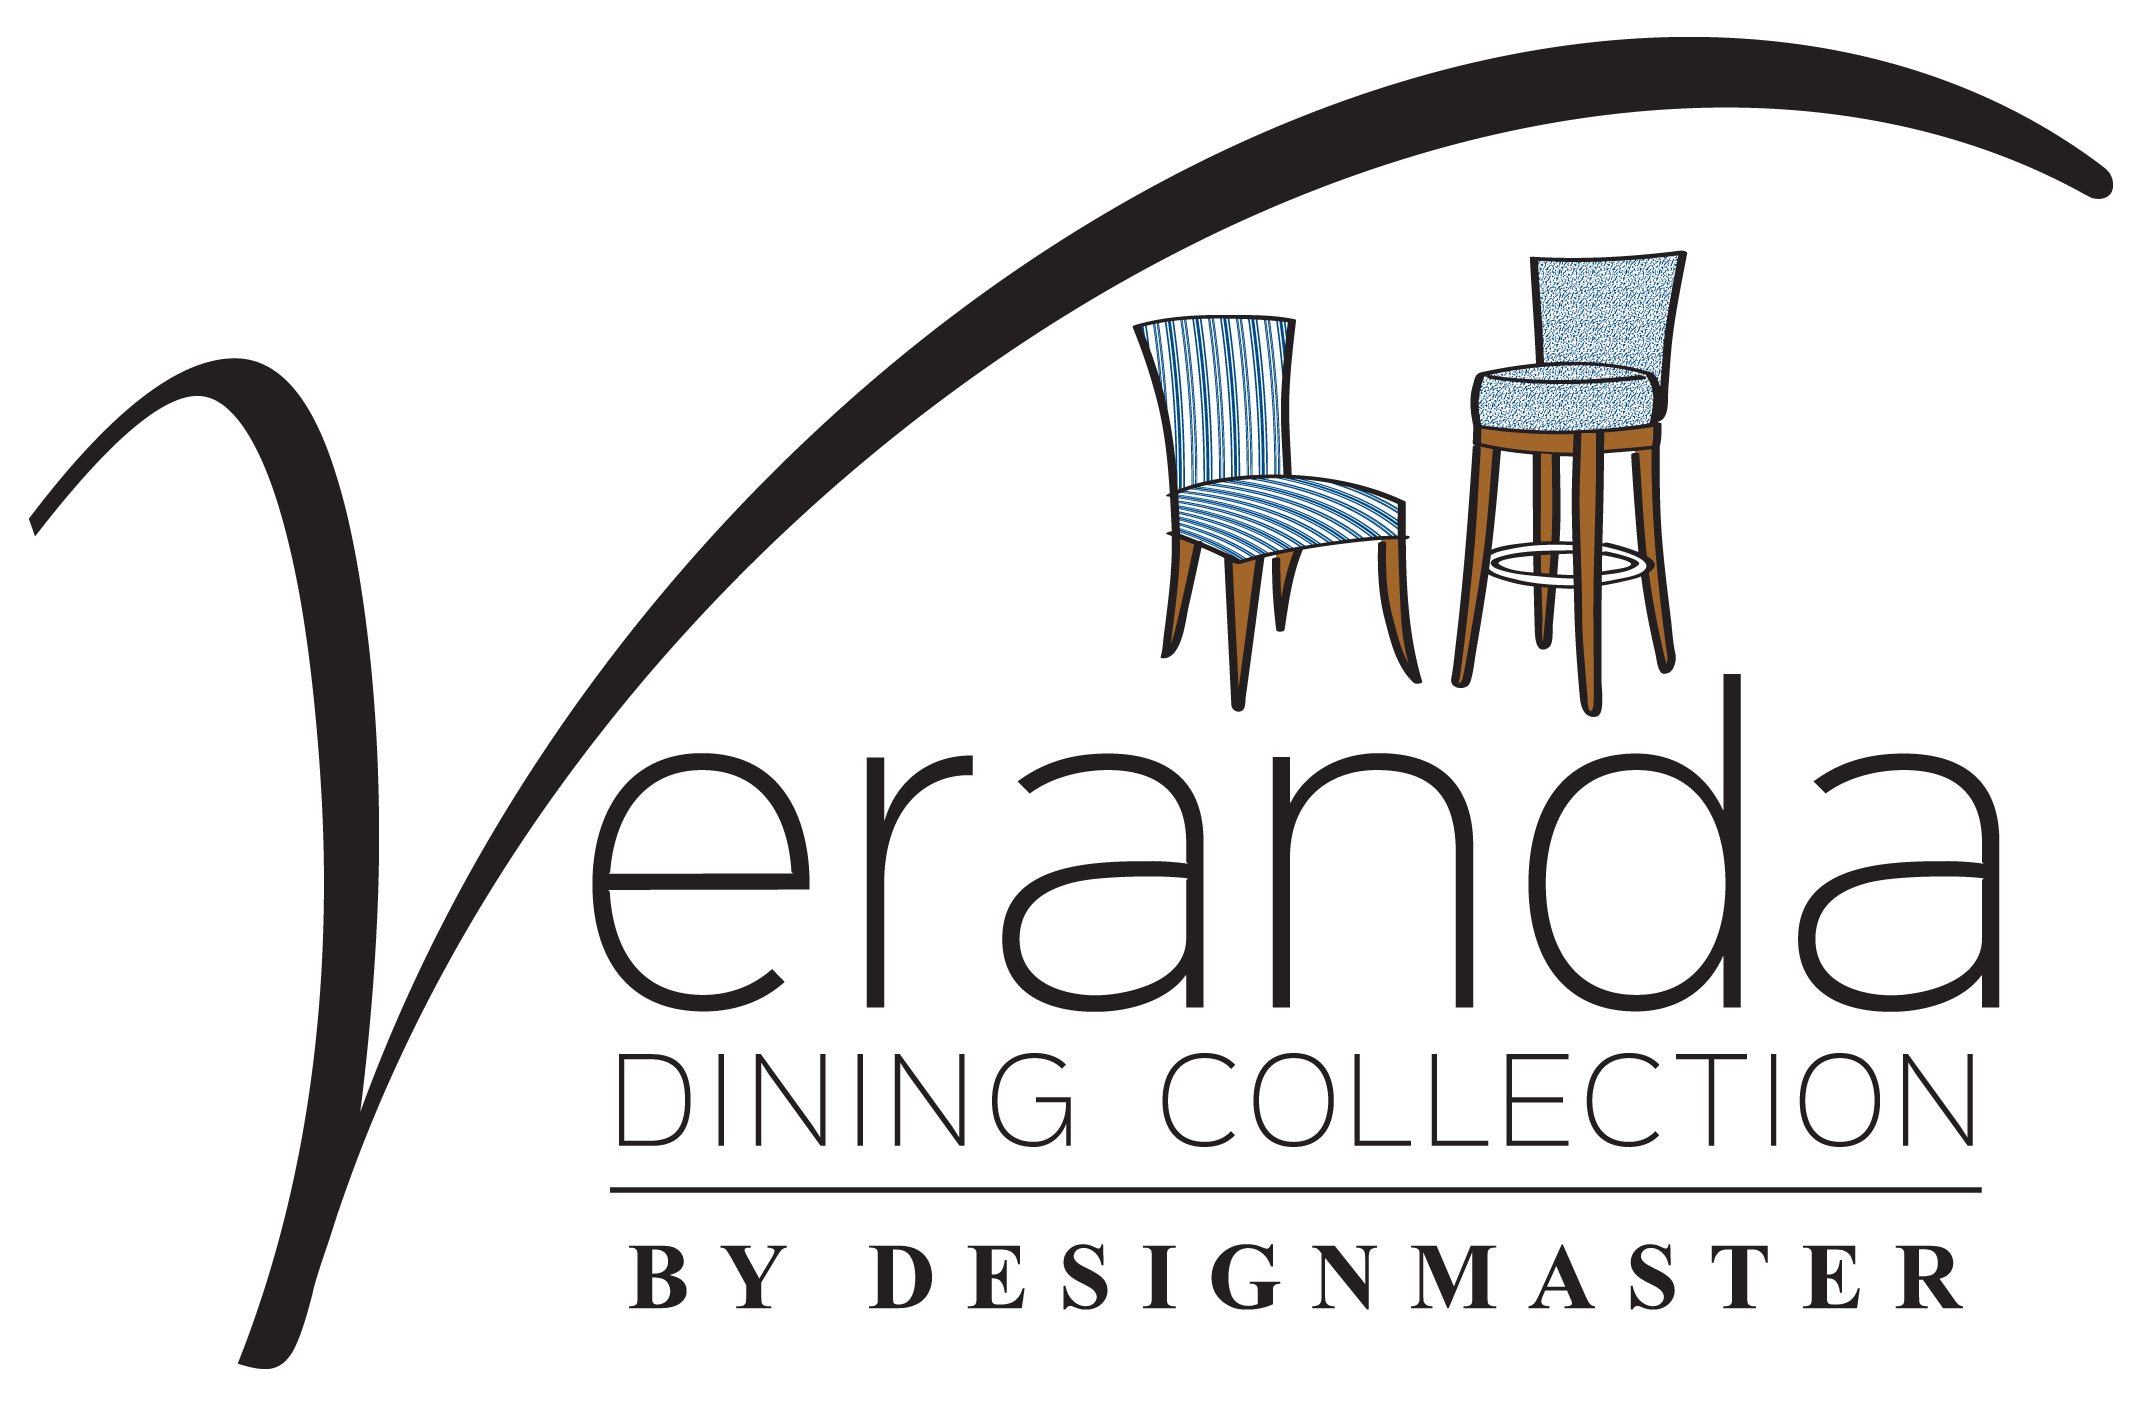 Veranda Dining Collection logo